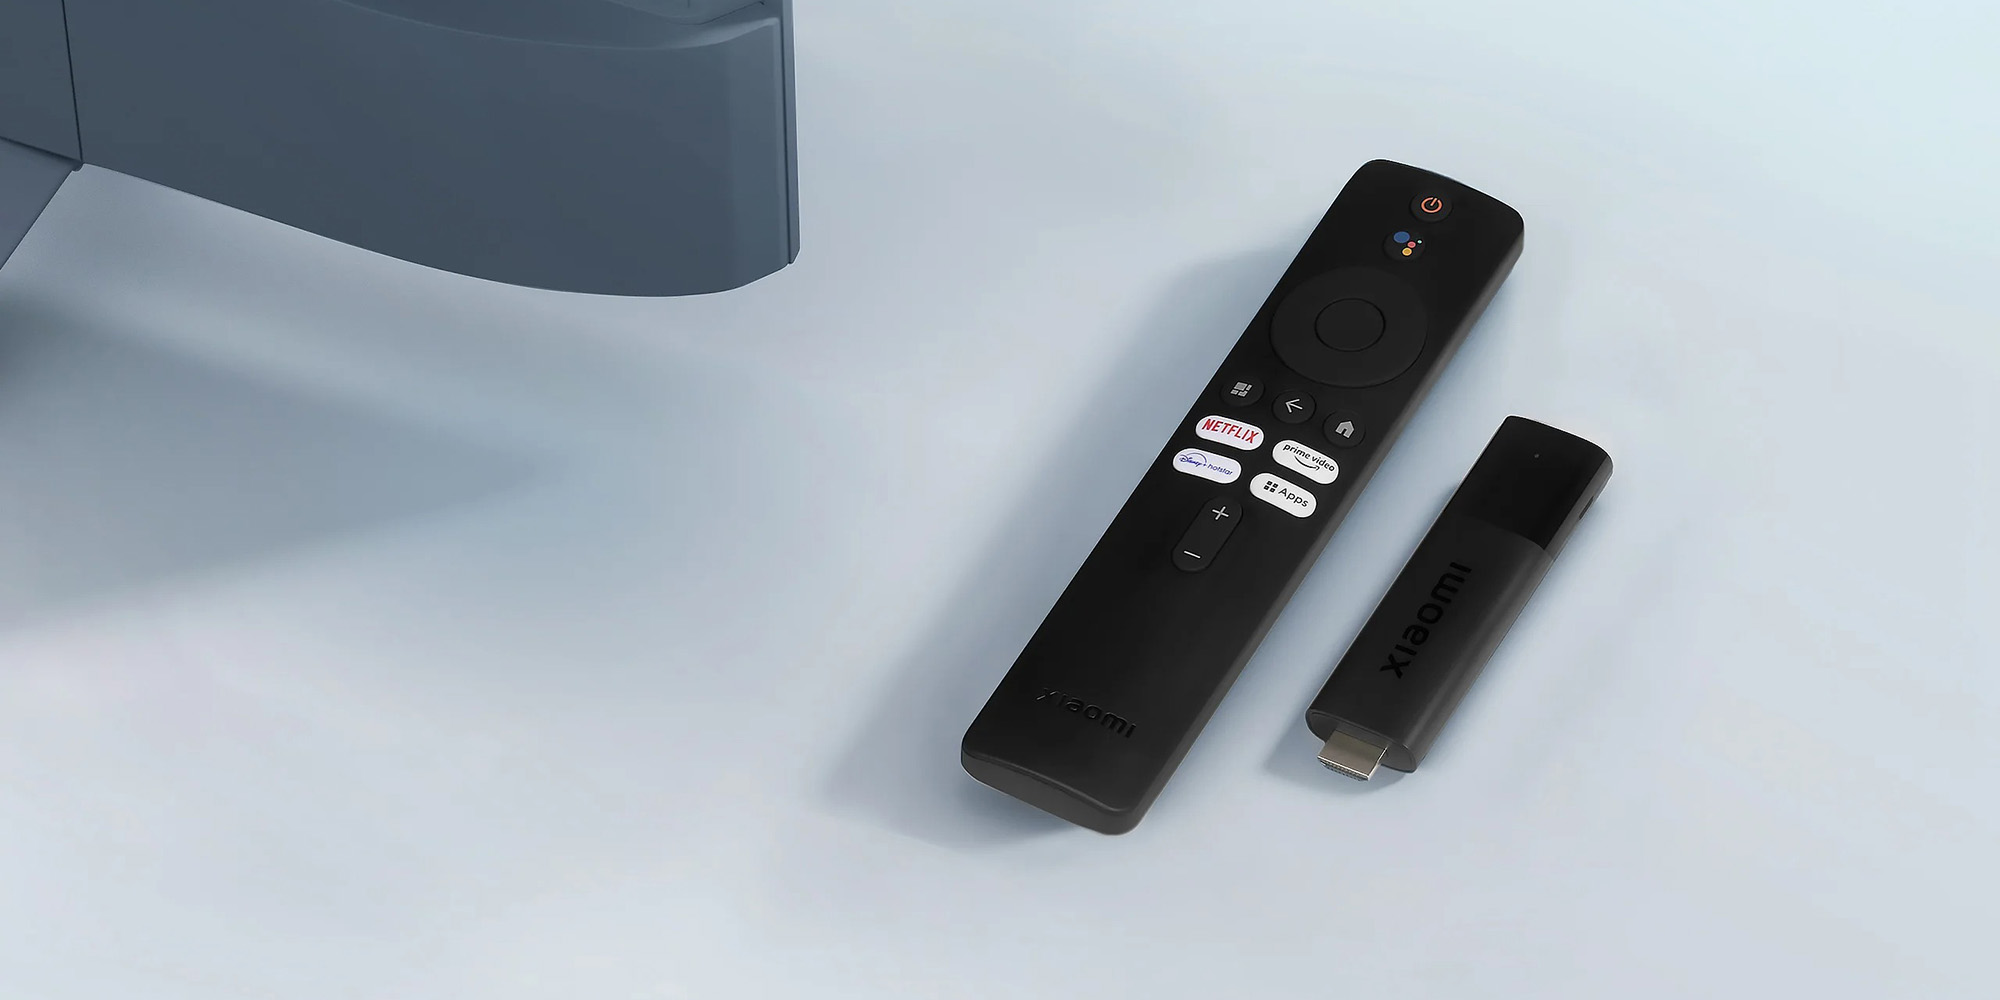  Remote Control for Xiaomi Mi TV Stick/MI Box 4S 4K